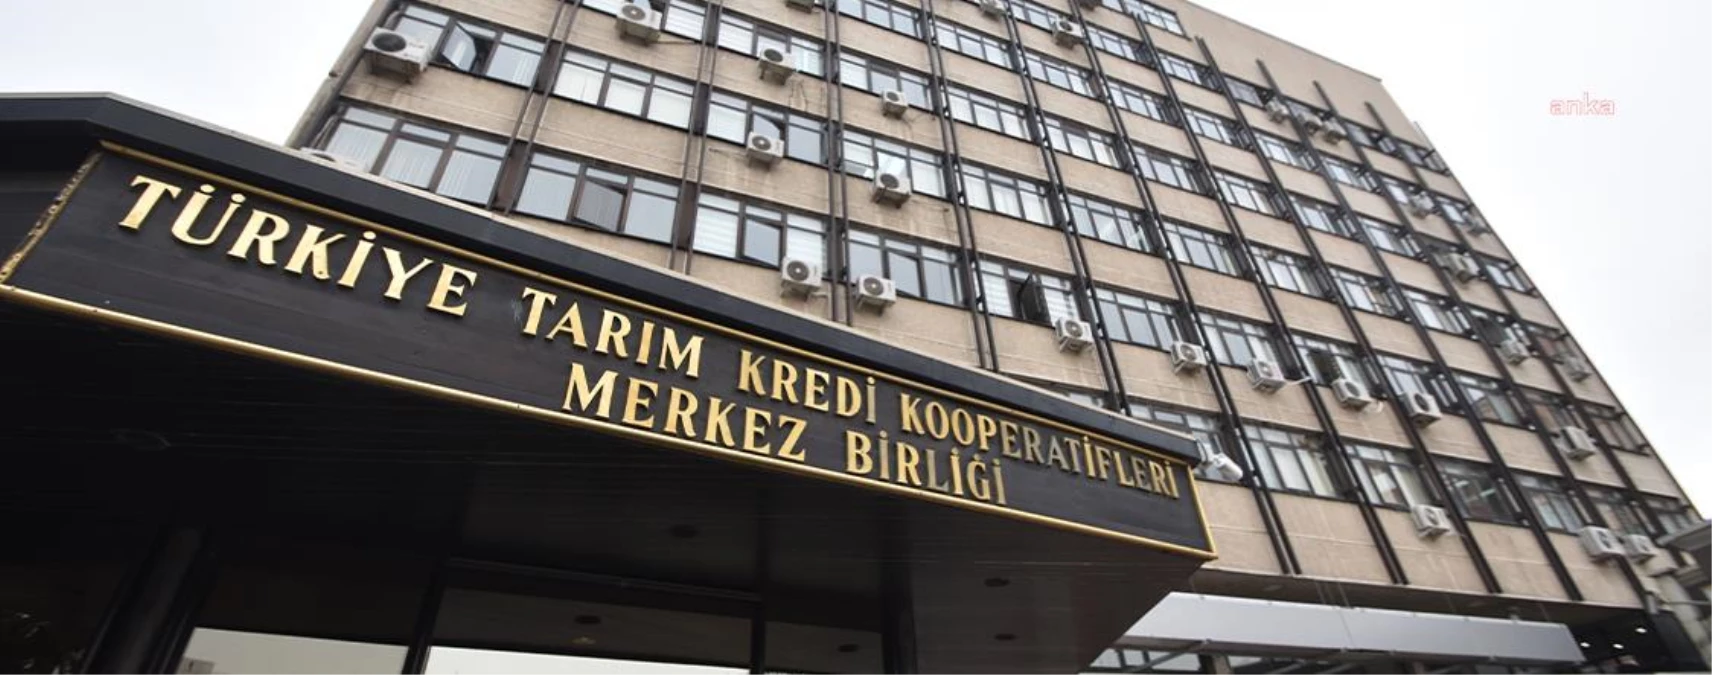 Türkiye Tarım Kredi Kooperatifleri Merkez Birliği, Ankara ve Çeşitli İllerdeki Daire ve Arsalarını Satışa Çıkardı